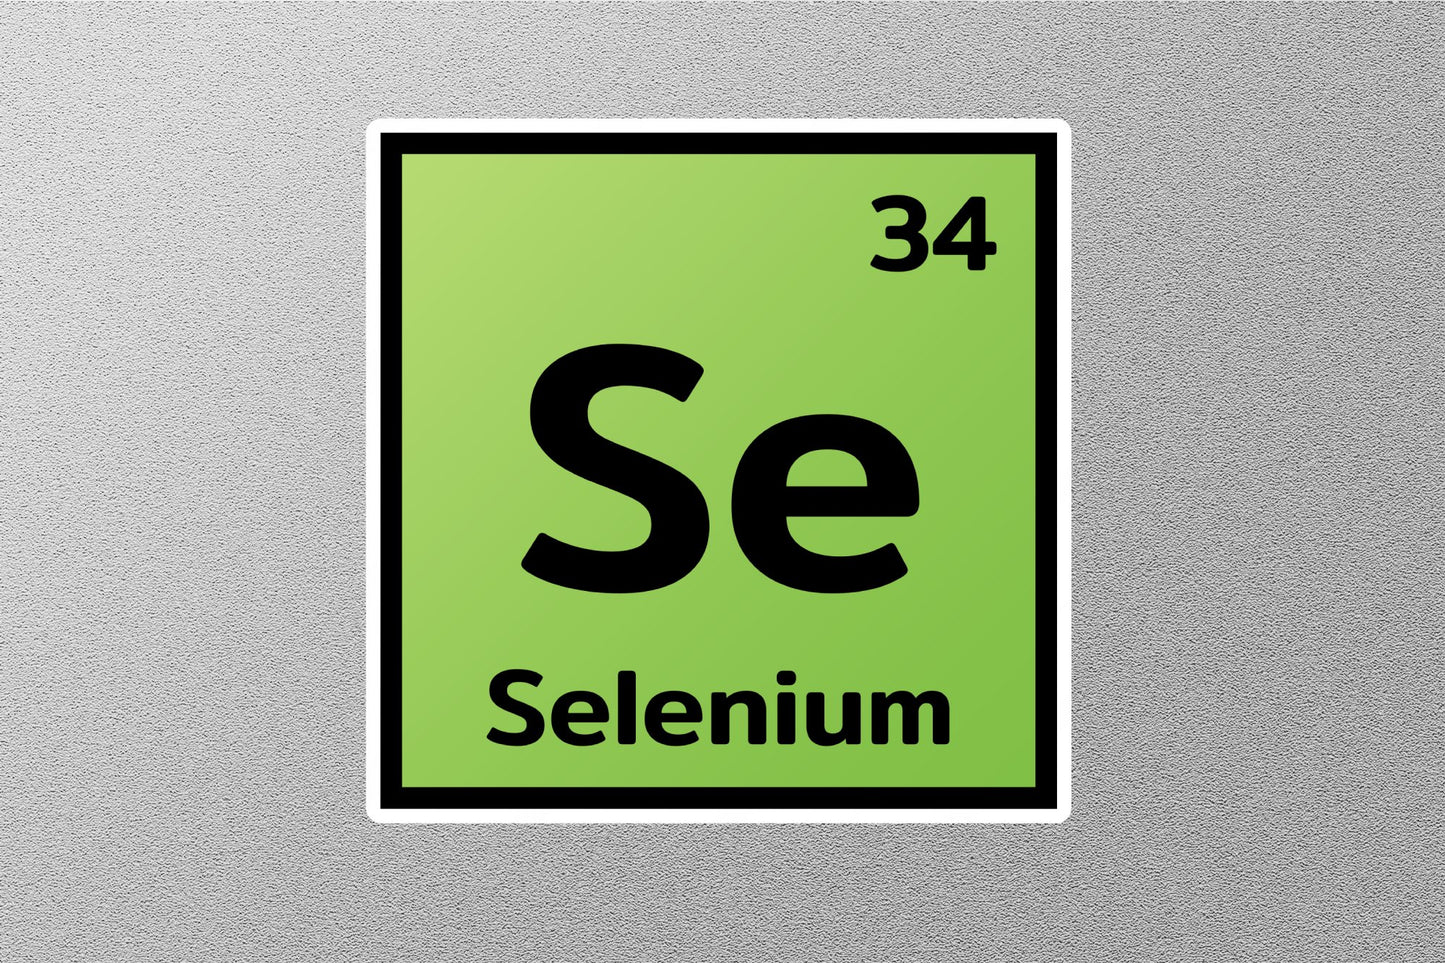 Selenium Periodic Element Sticker